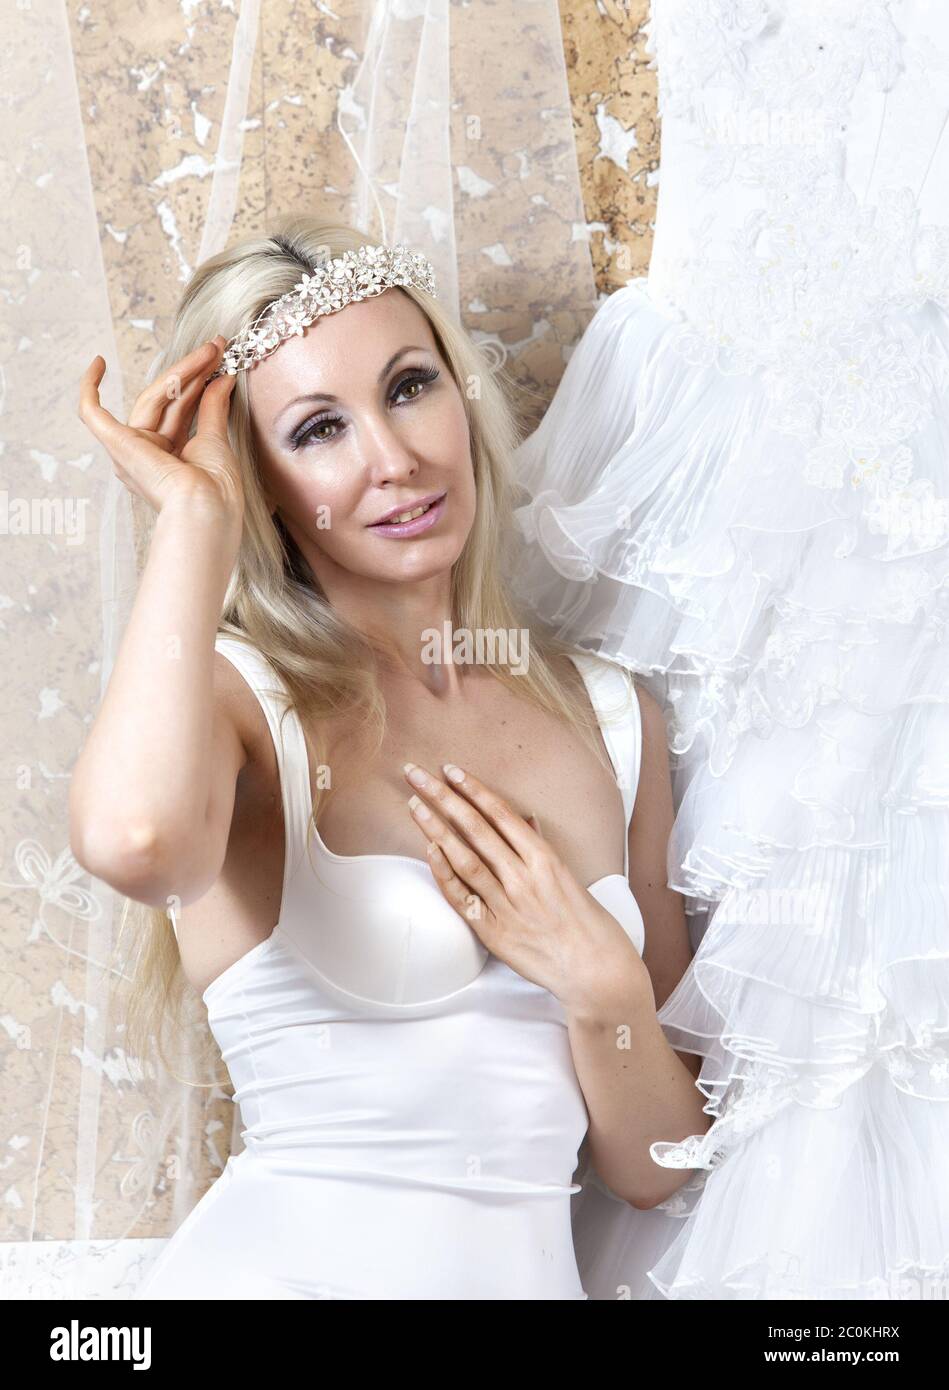 Belle femme avec une robe de mariage. Le montage Banque D'Images